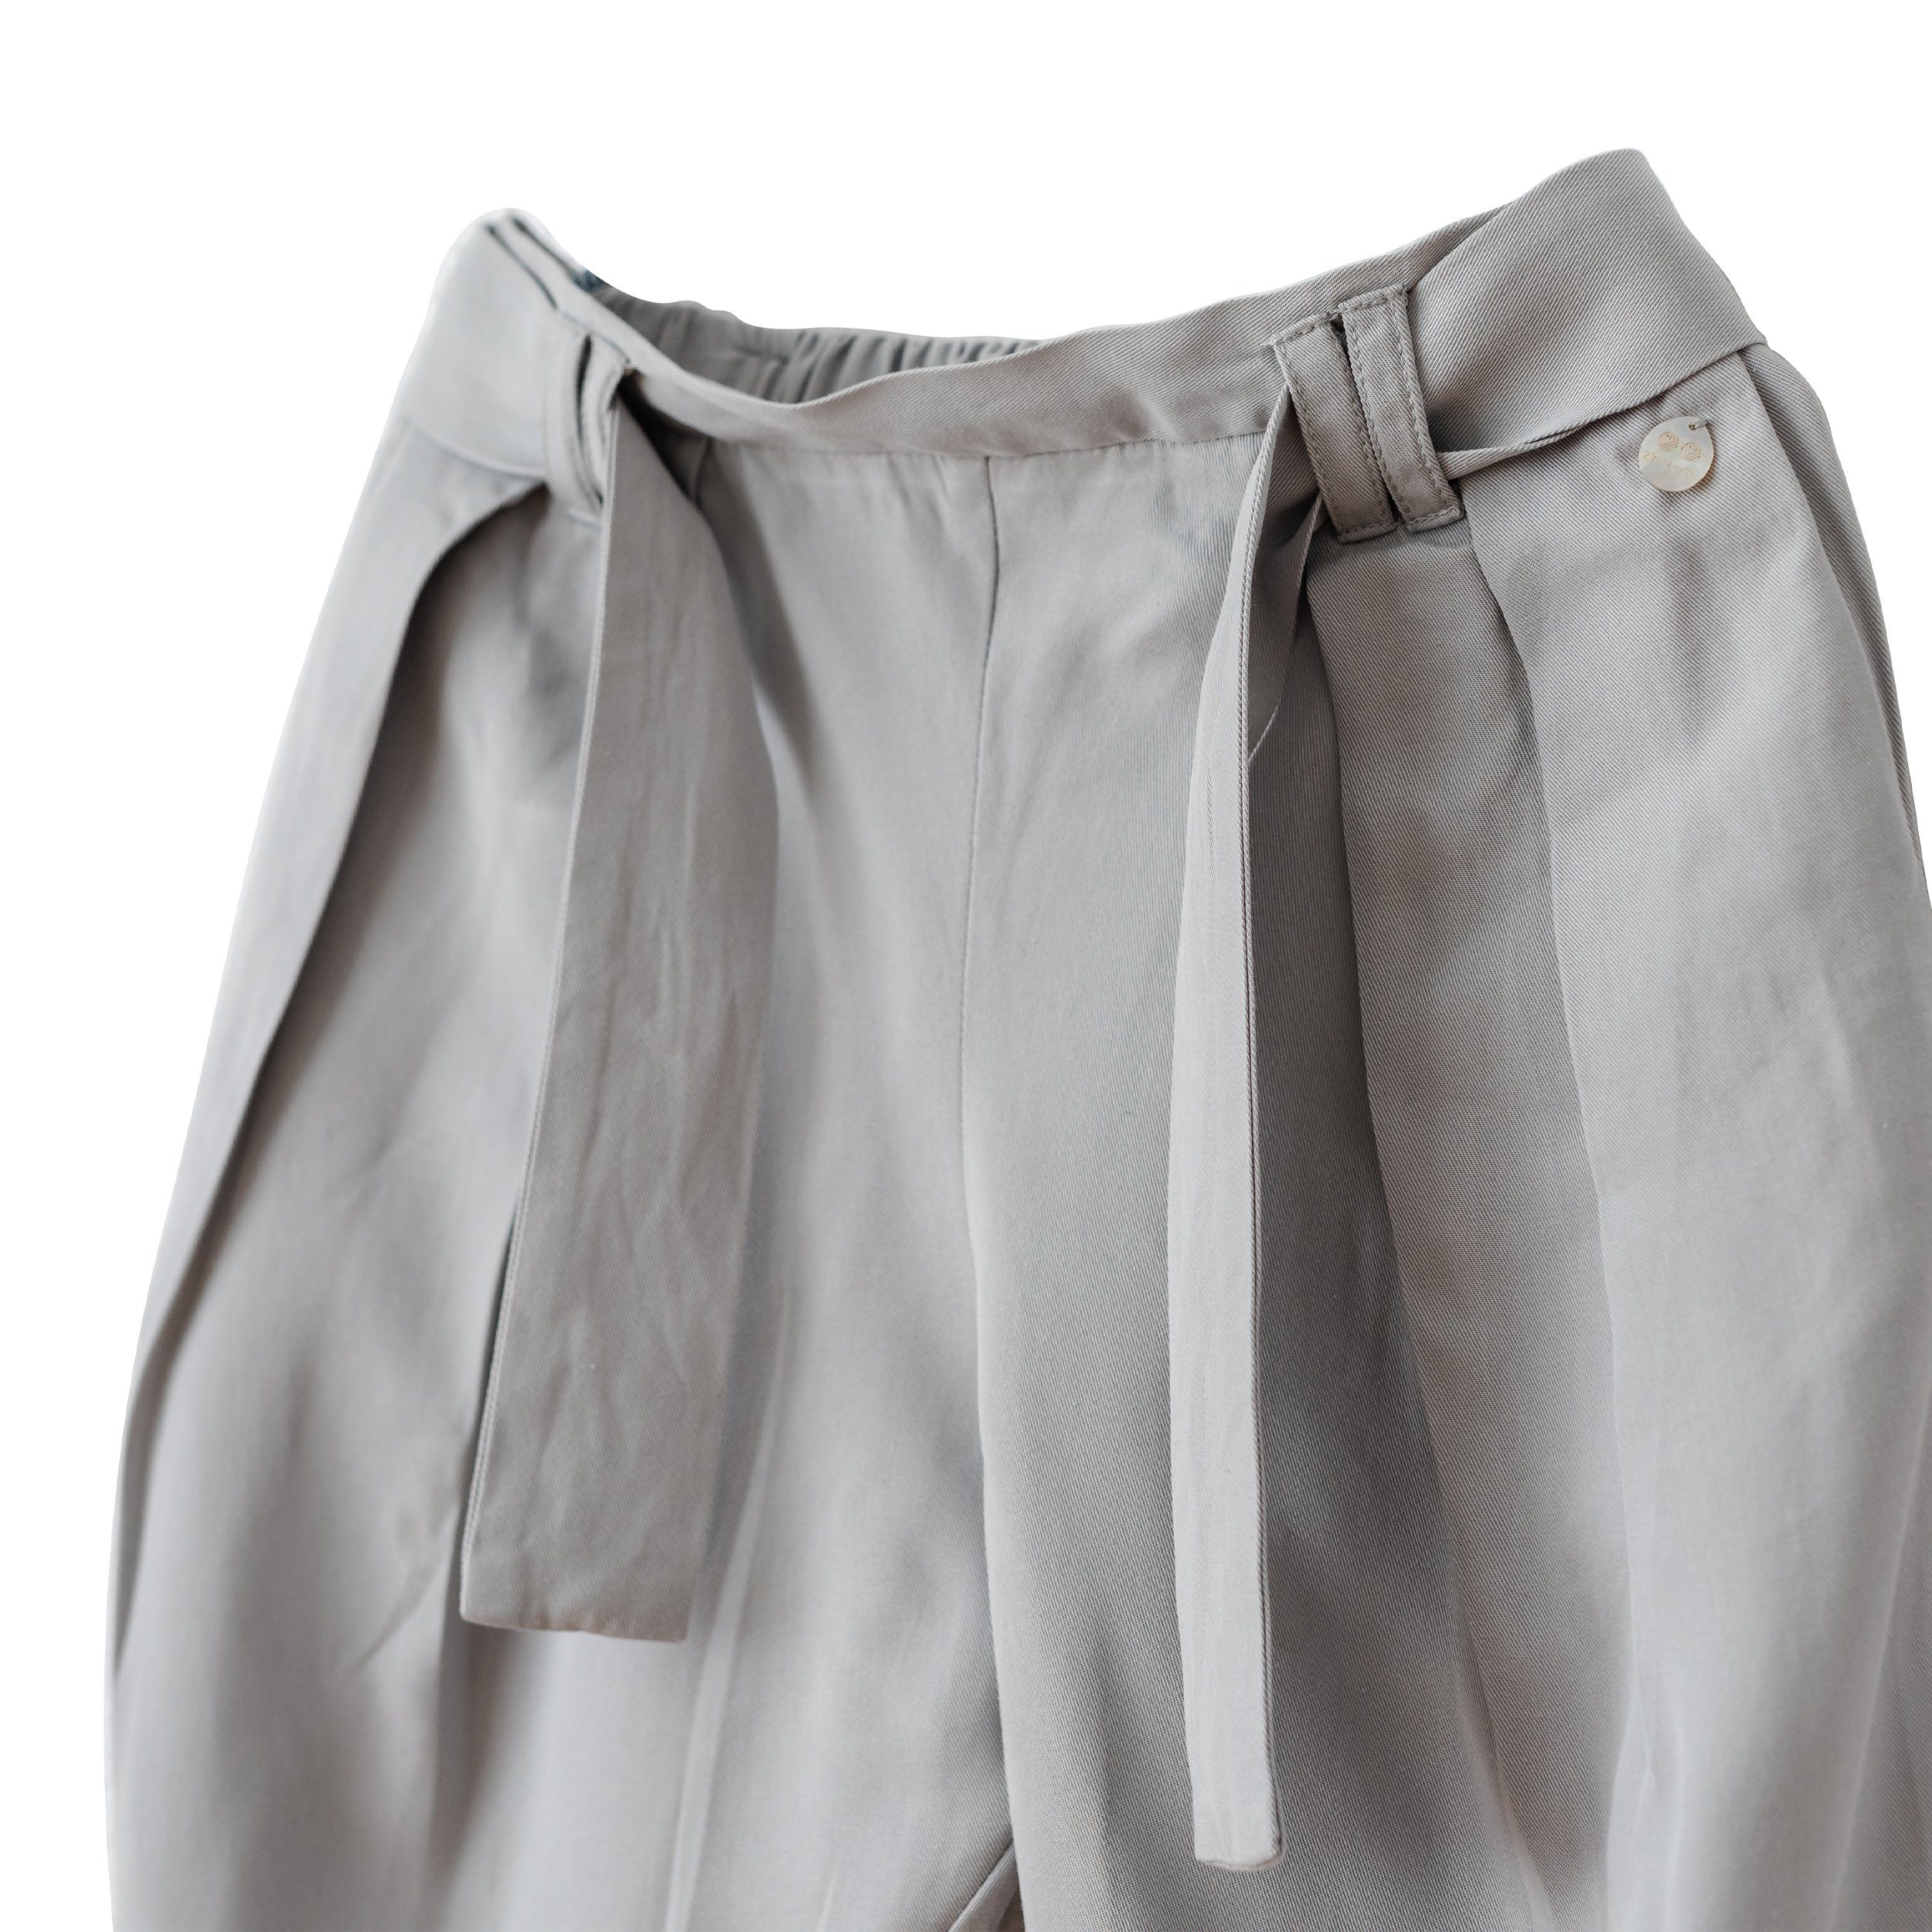 Pearl & Unifarbe Mädchen Gürtel für in weichem Grün Hose Zimt Stoffhose mit Lyocell, aus